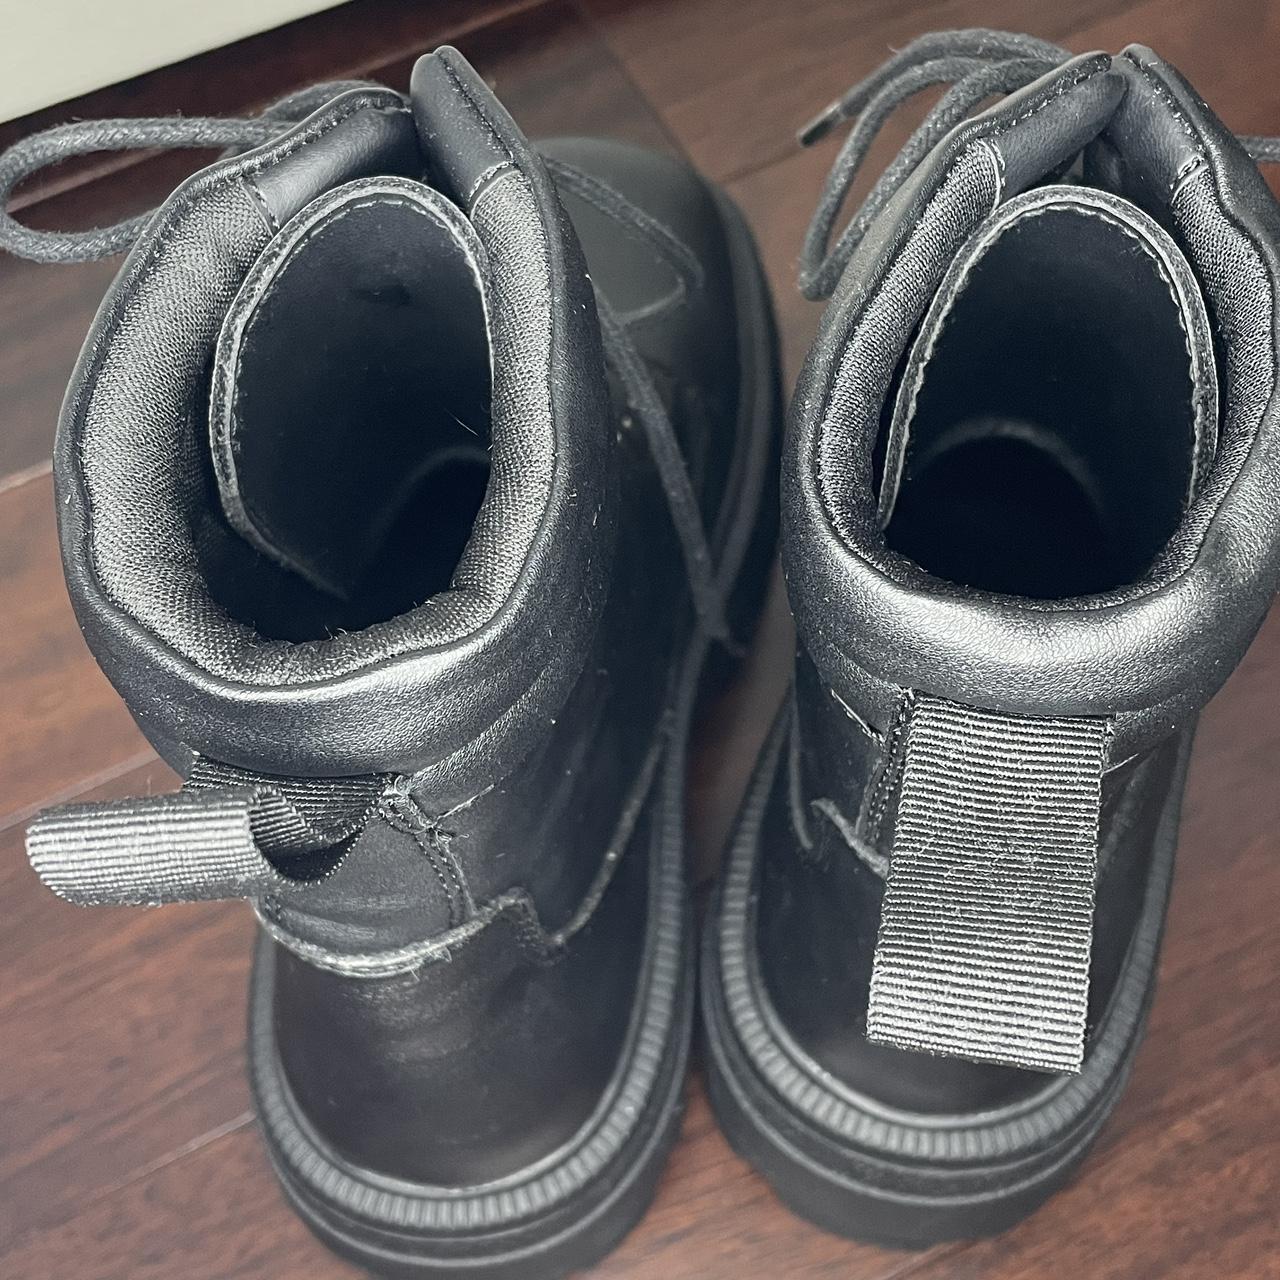 Forever 21 Men's Black Boots | Depop